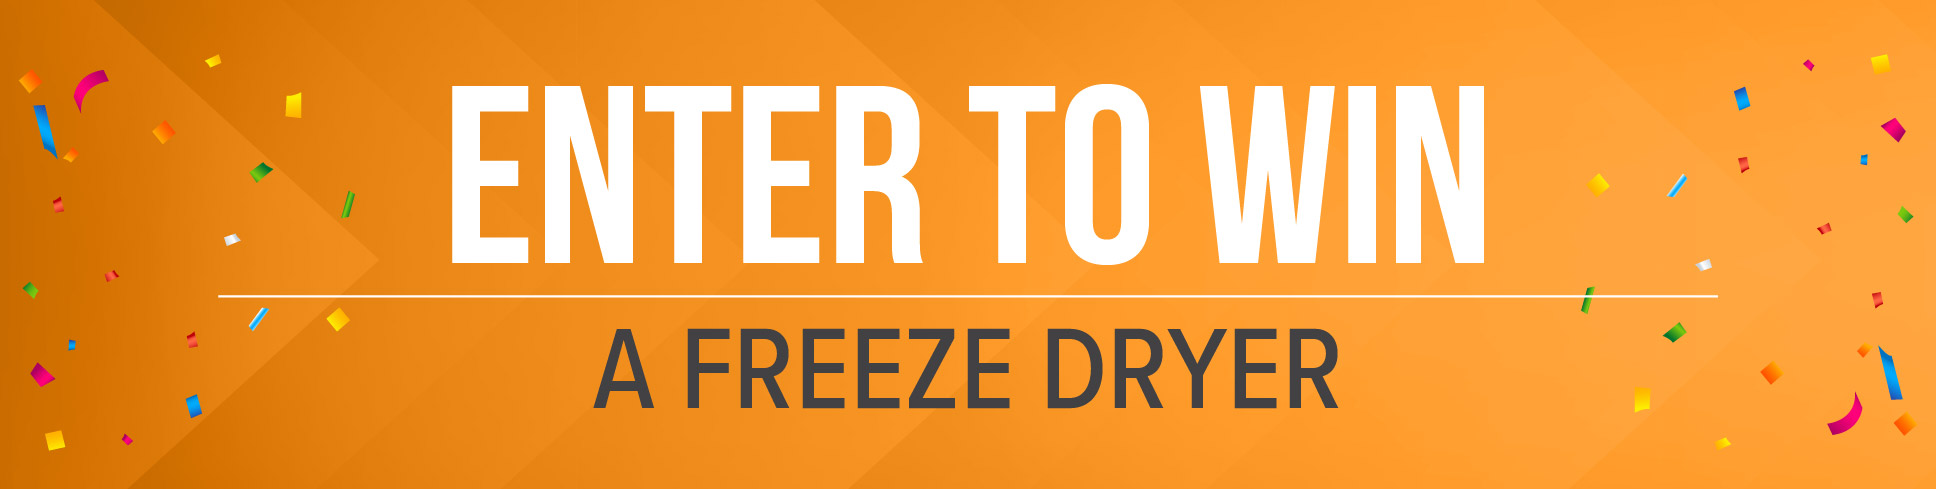 Enter to Win a Freeze Dryer-orange image divider